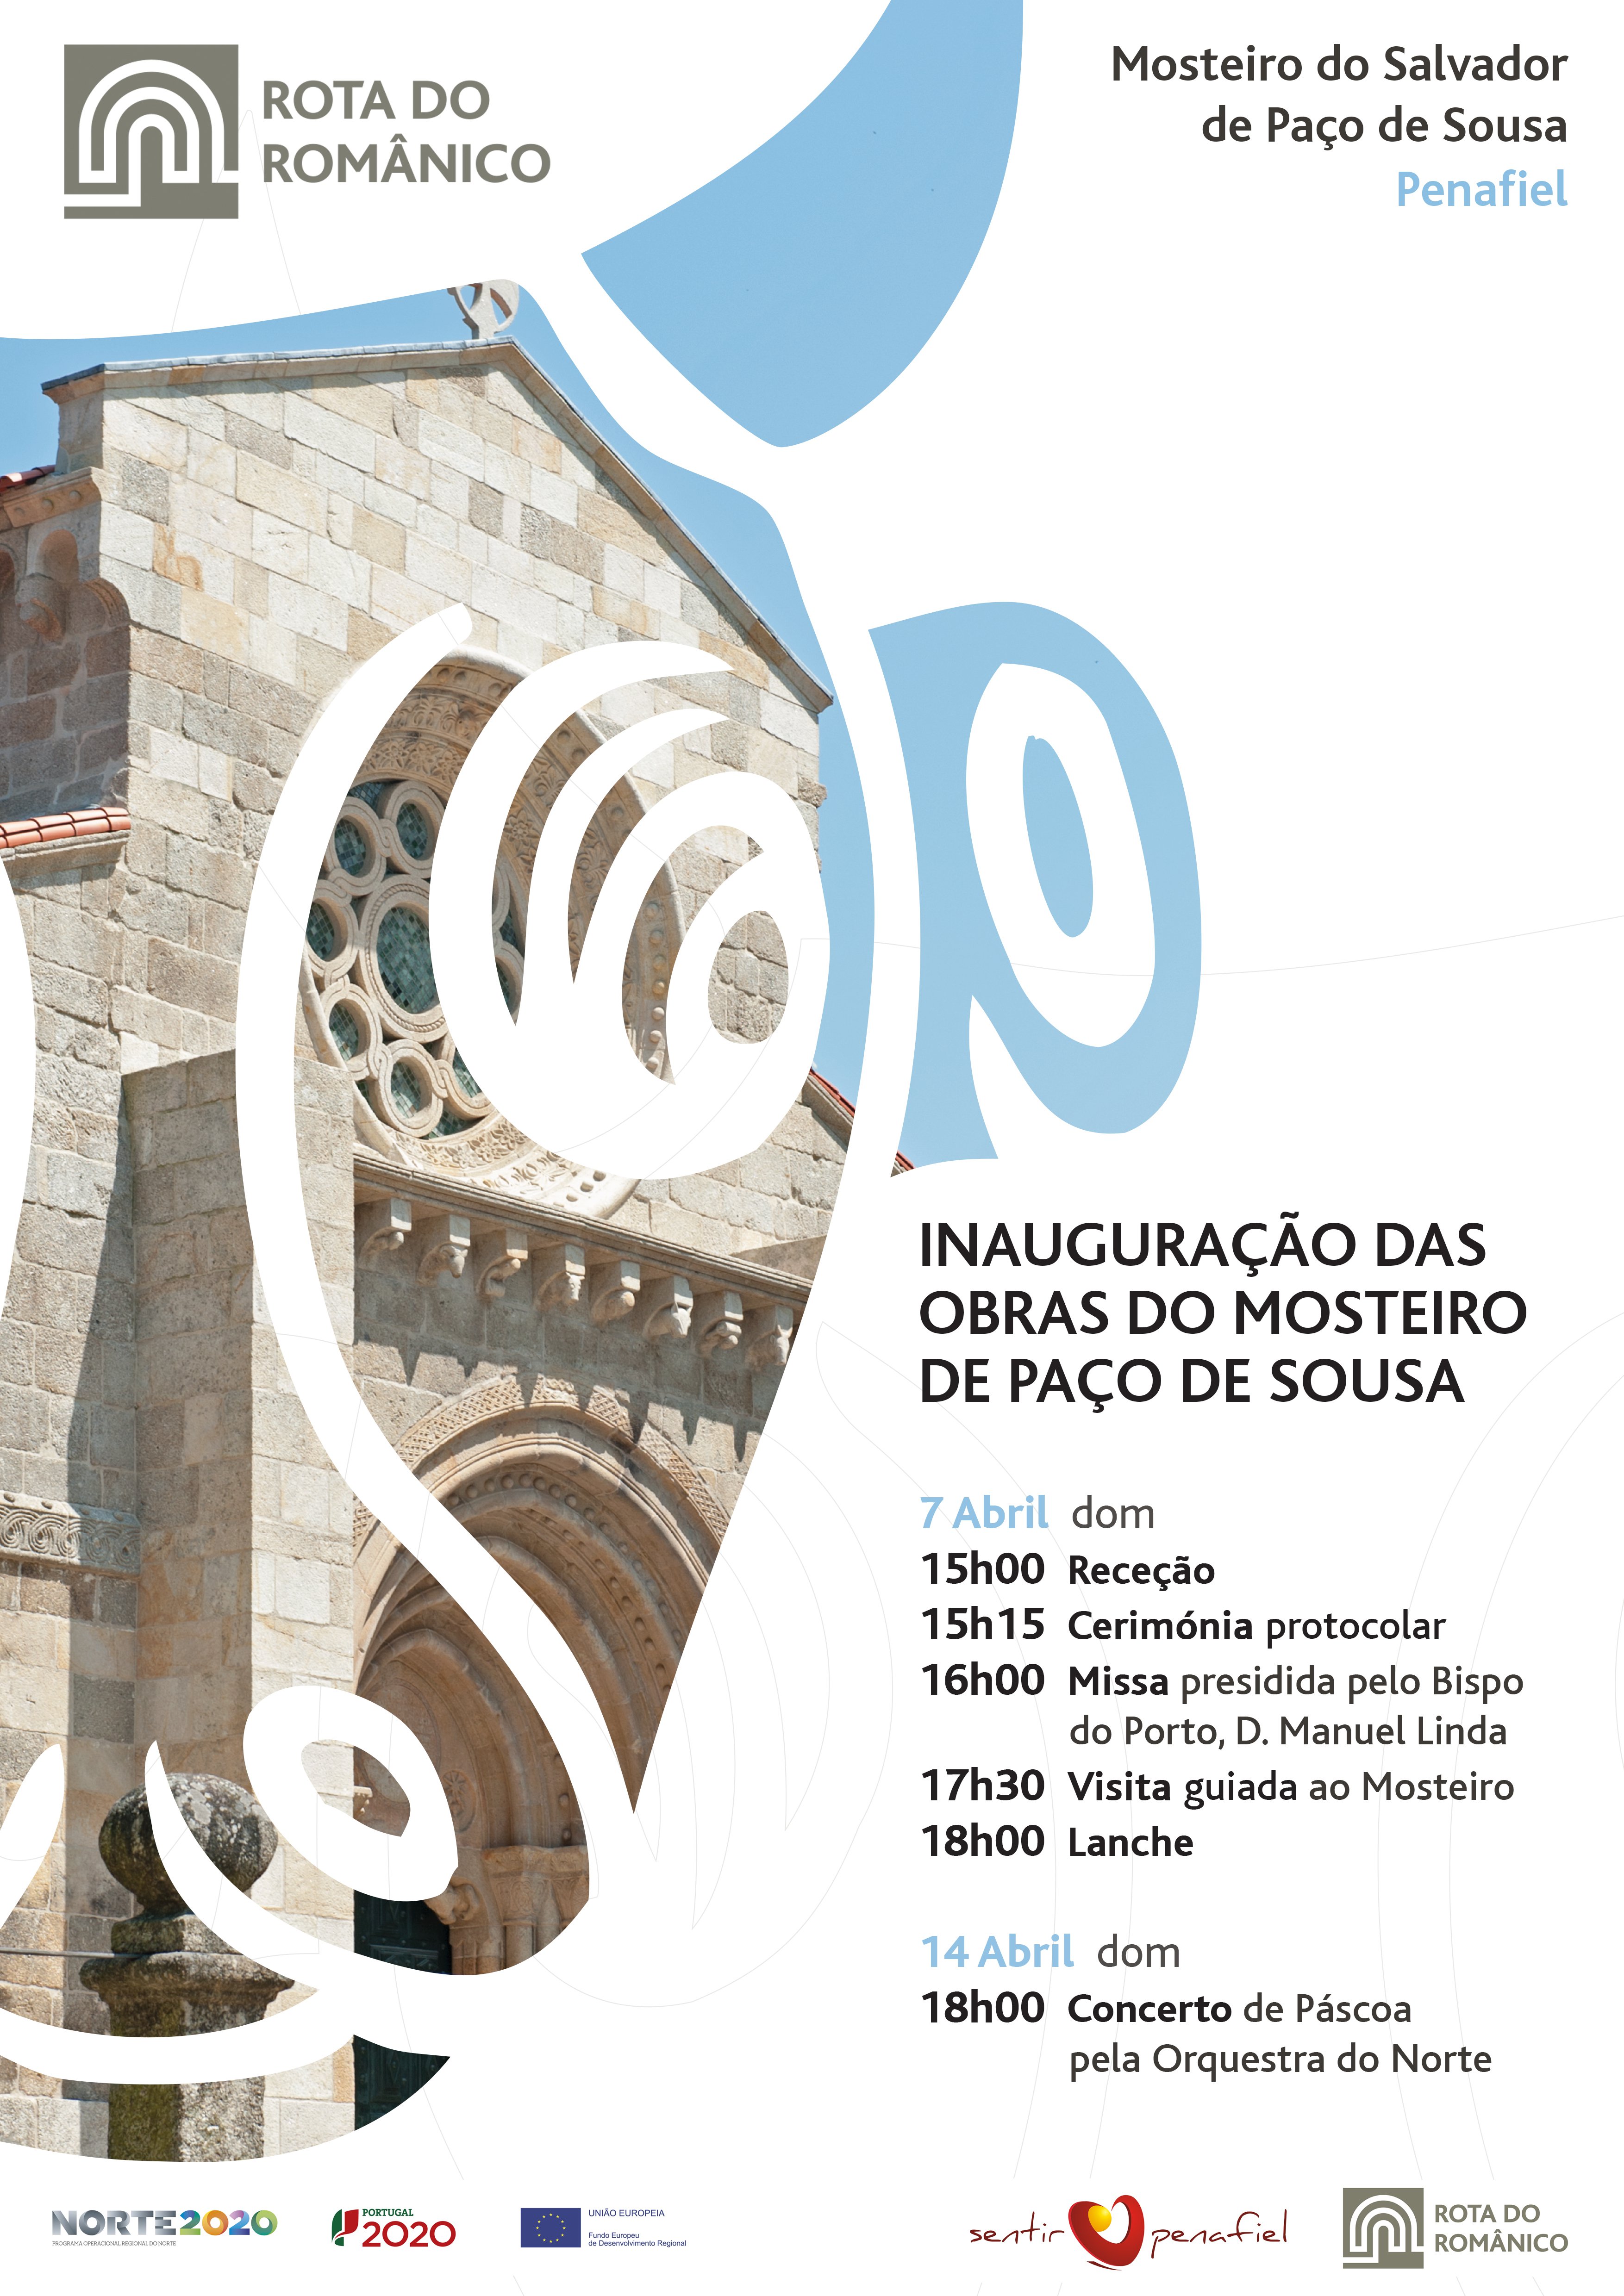 Mosteiro de Paço de Sousa: Final das Obras